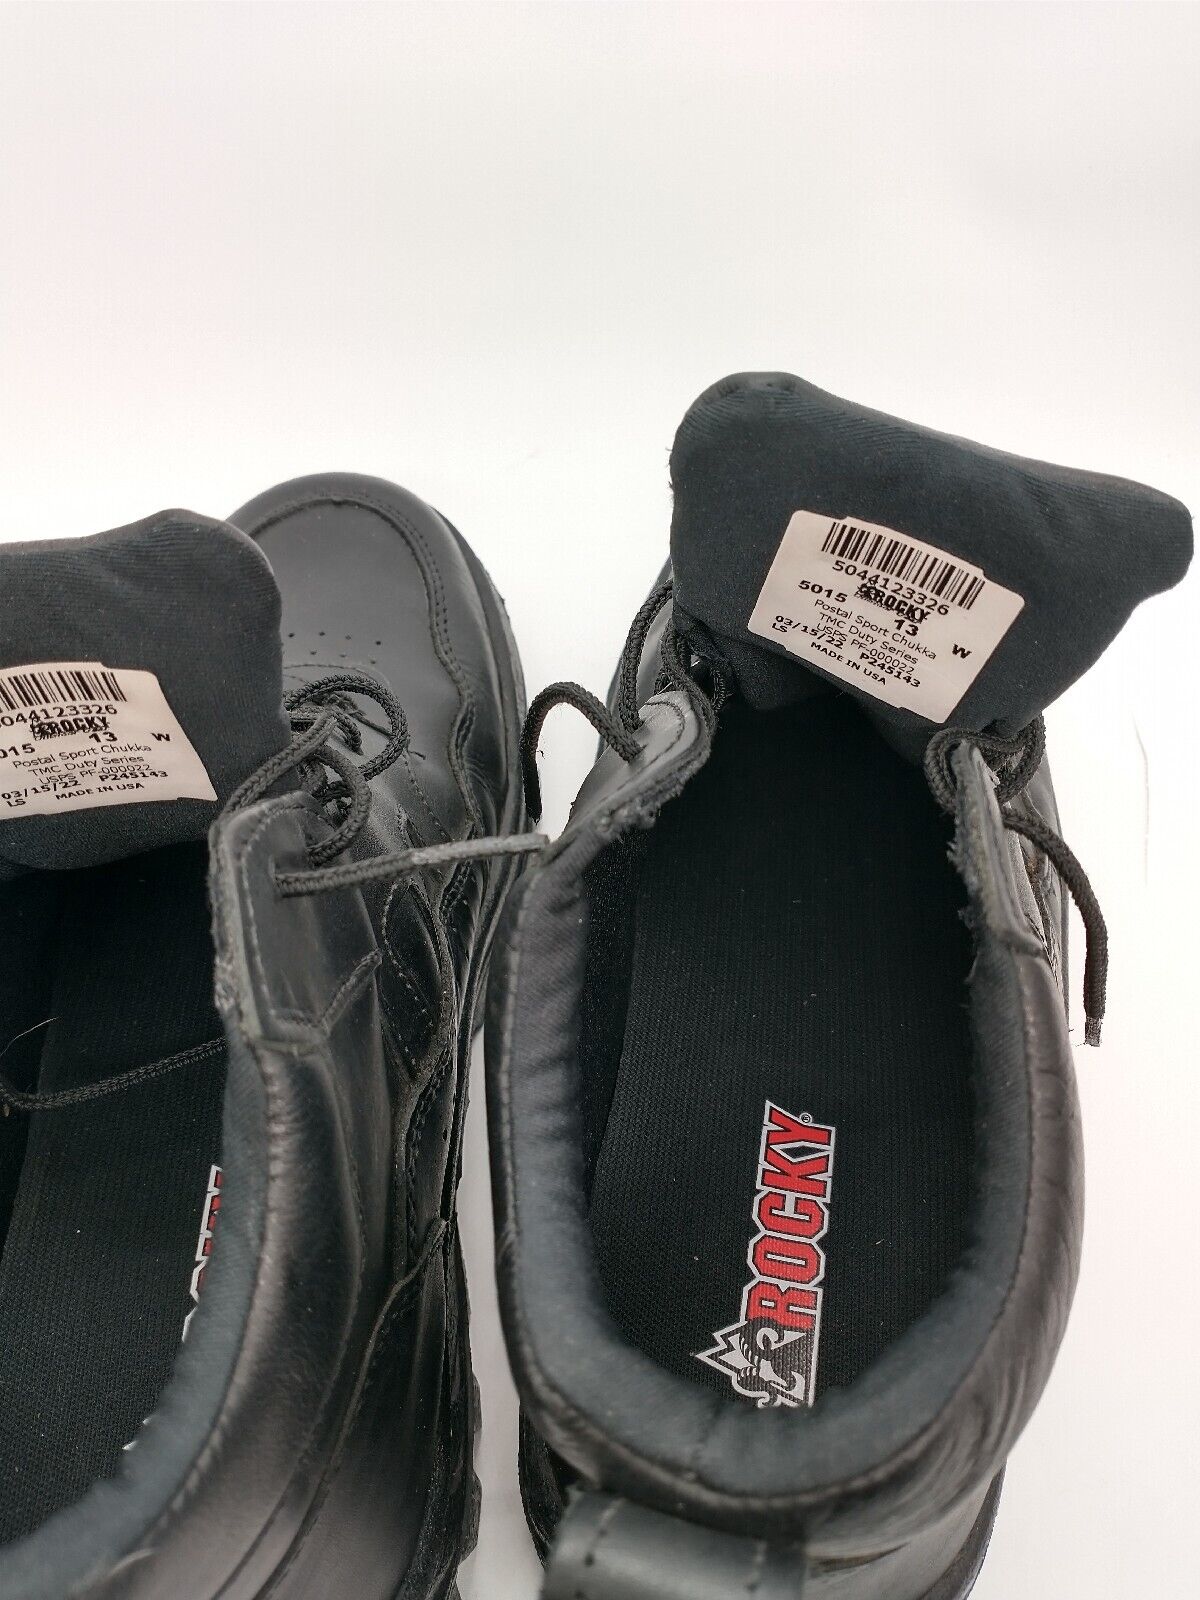 Rocky TMC Duty Postal Boots USPS Approved Sport Chukka Black Size 13 | eBay